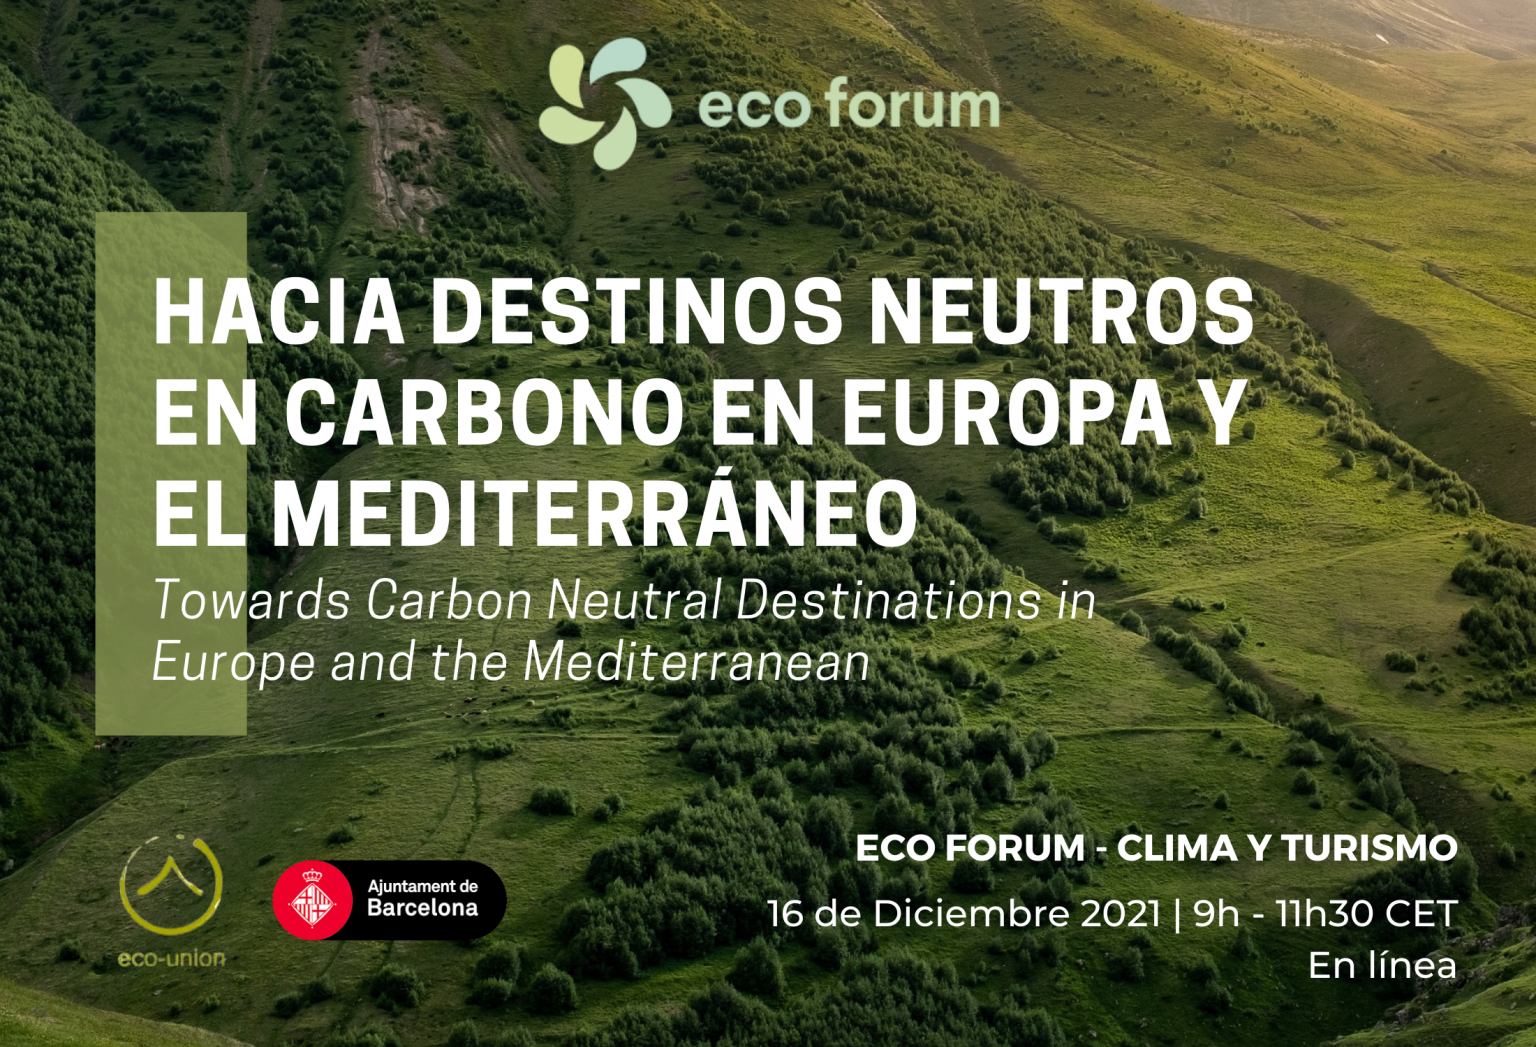 ECO FORUM 2021 – Clima y Turismo